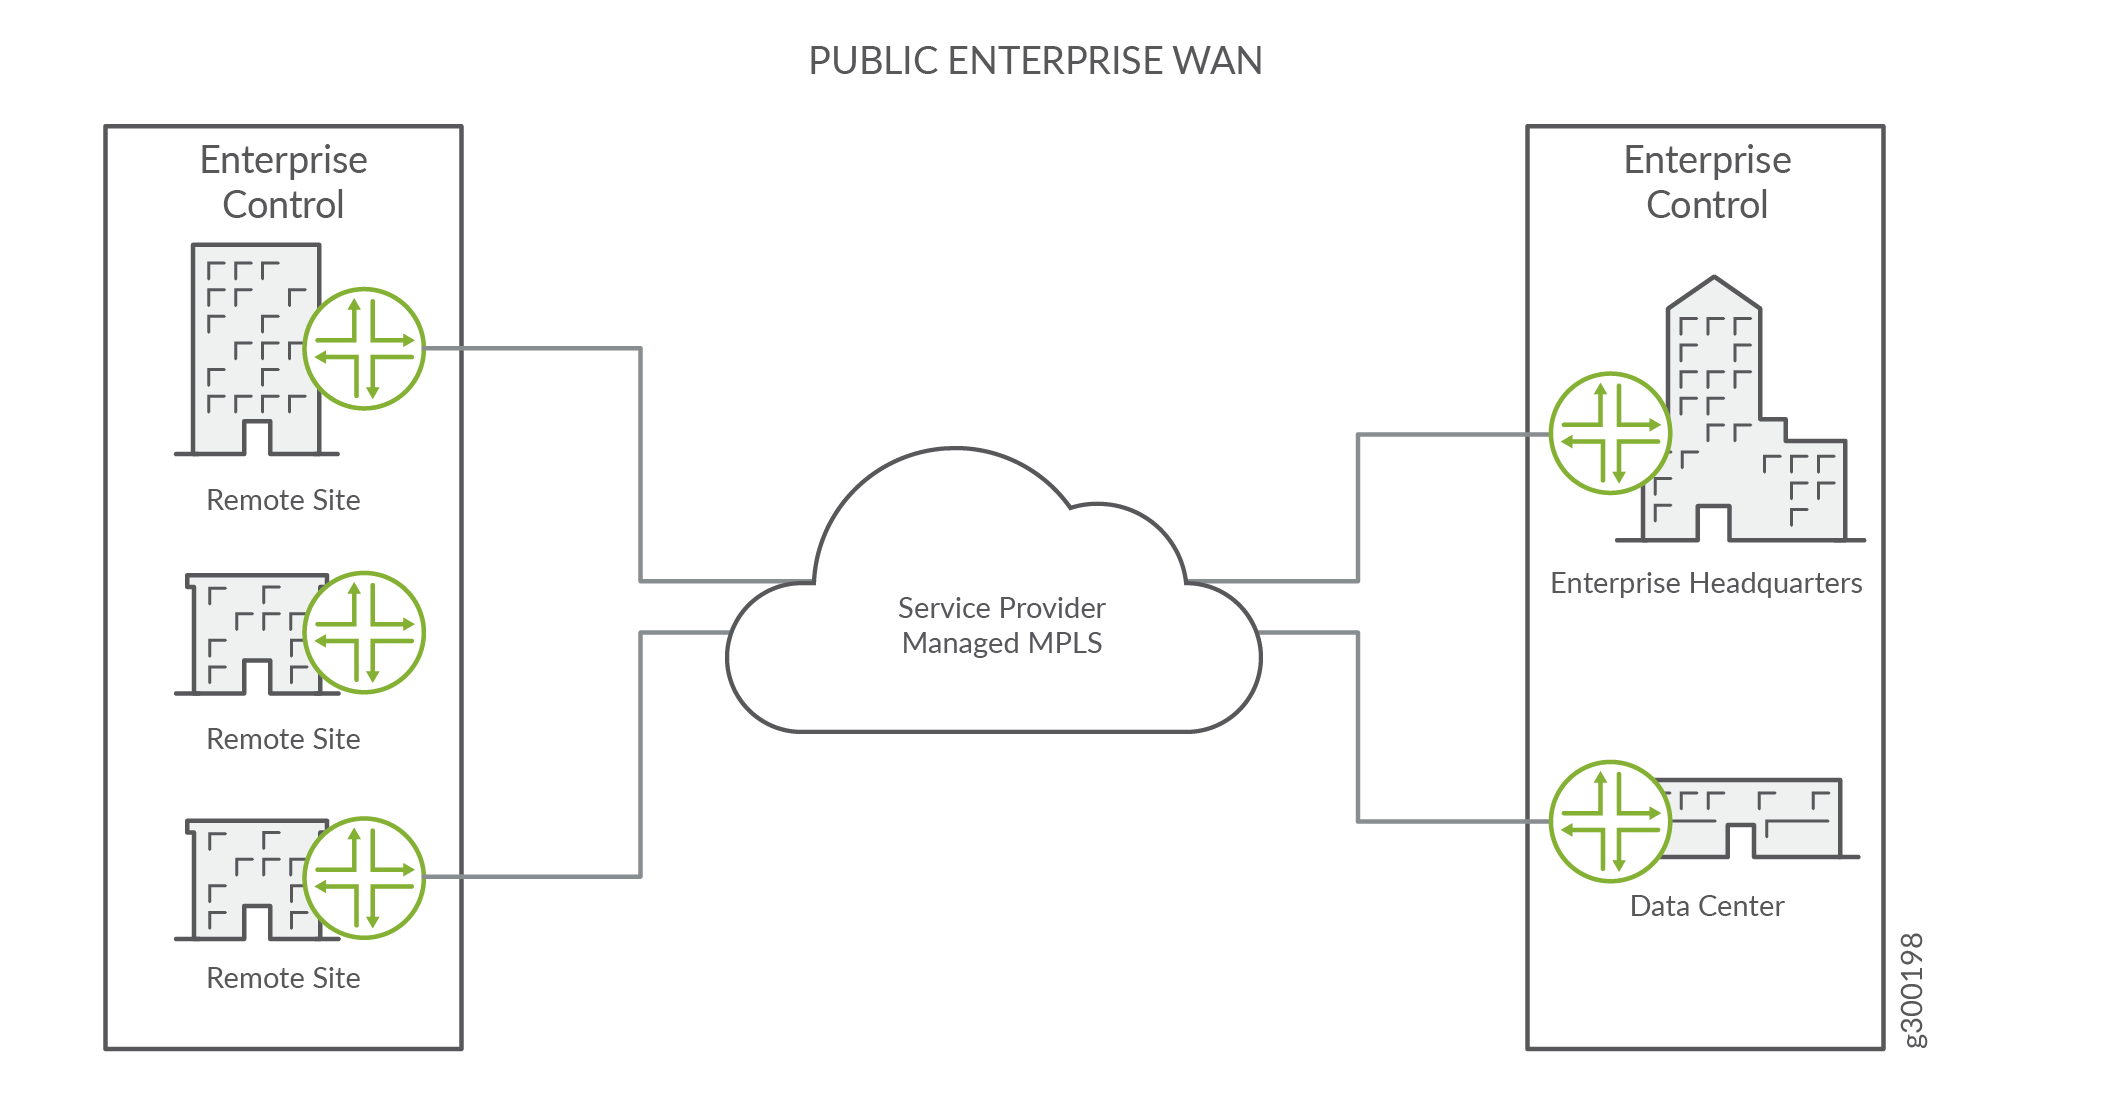 Das öffentliche Unternehmens-WAN wird vollständig
vom Service Provider verwaltet